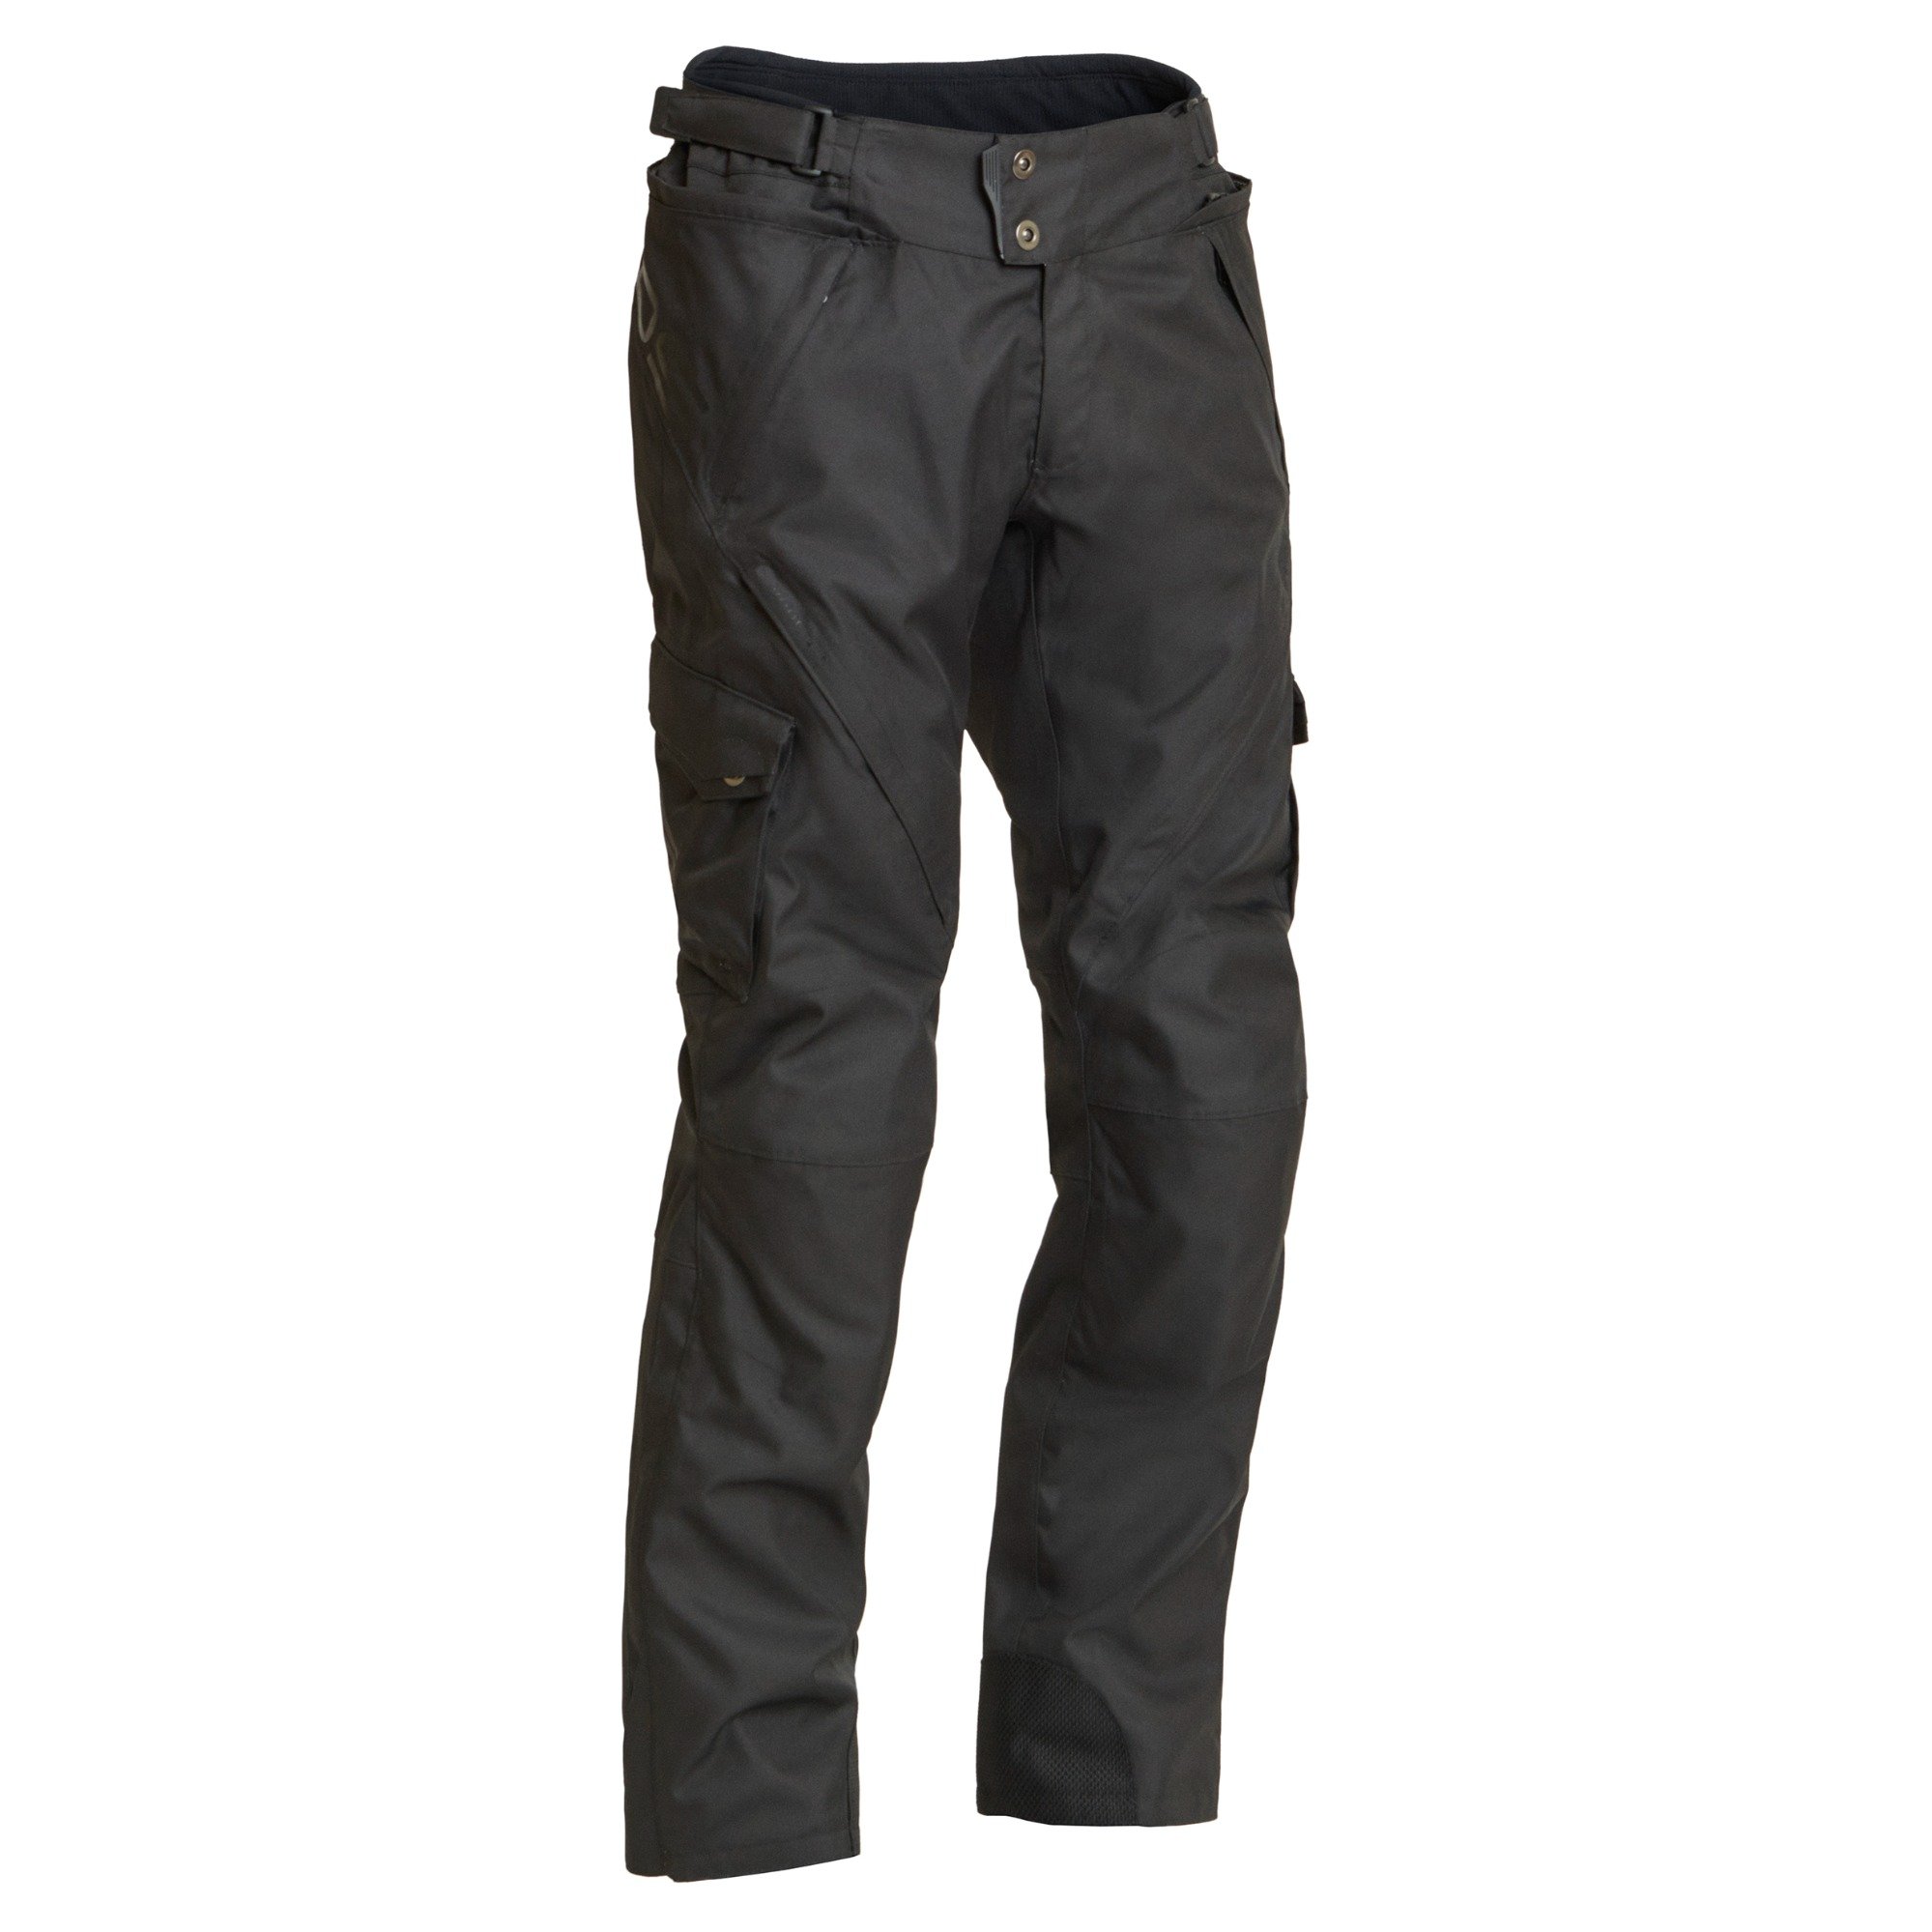 Image of Lindstrands Berga Black Textile Pants Size 60 ID 6438235188226